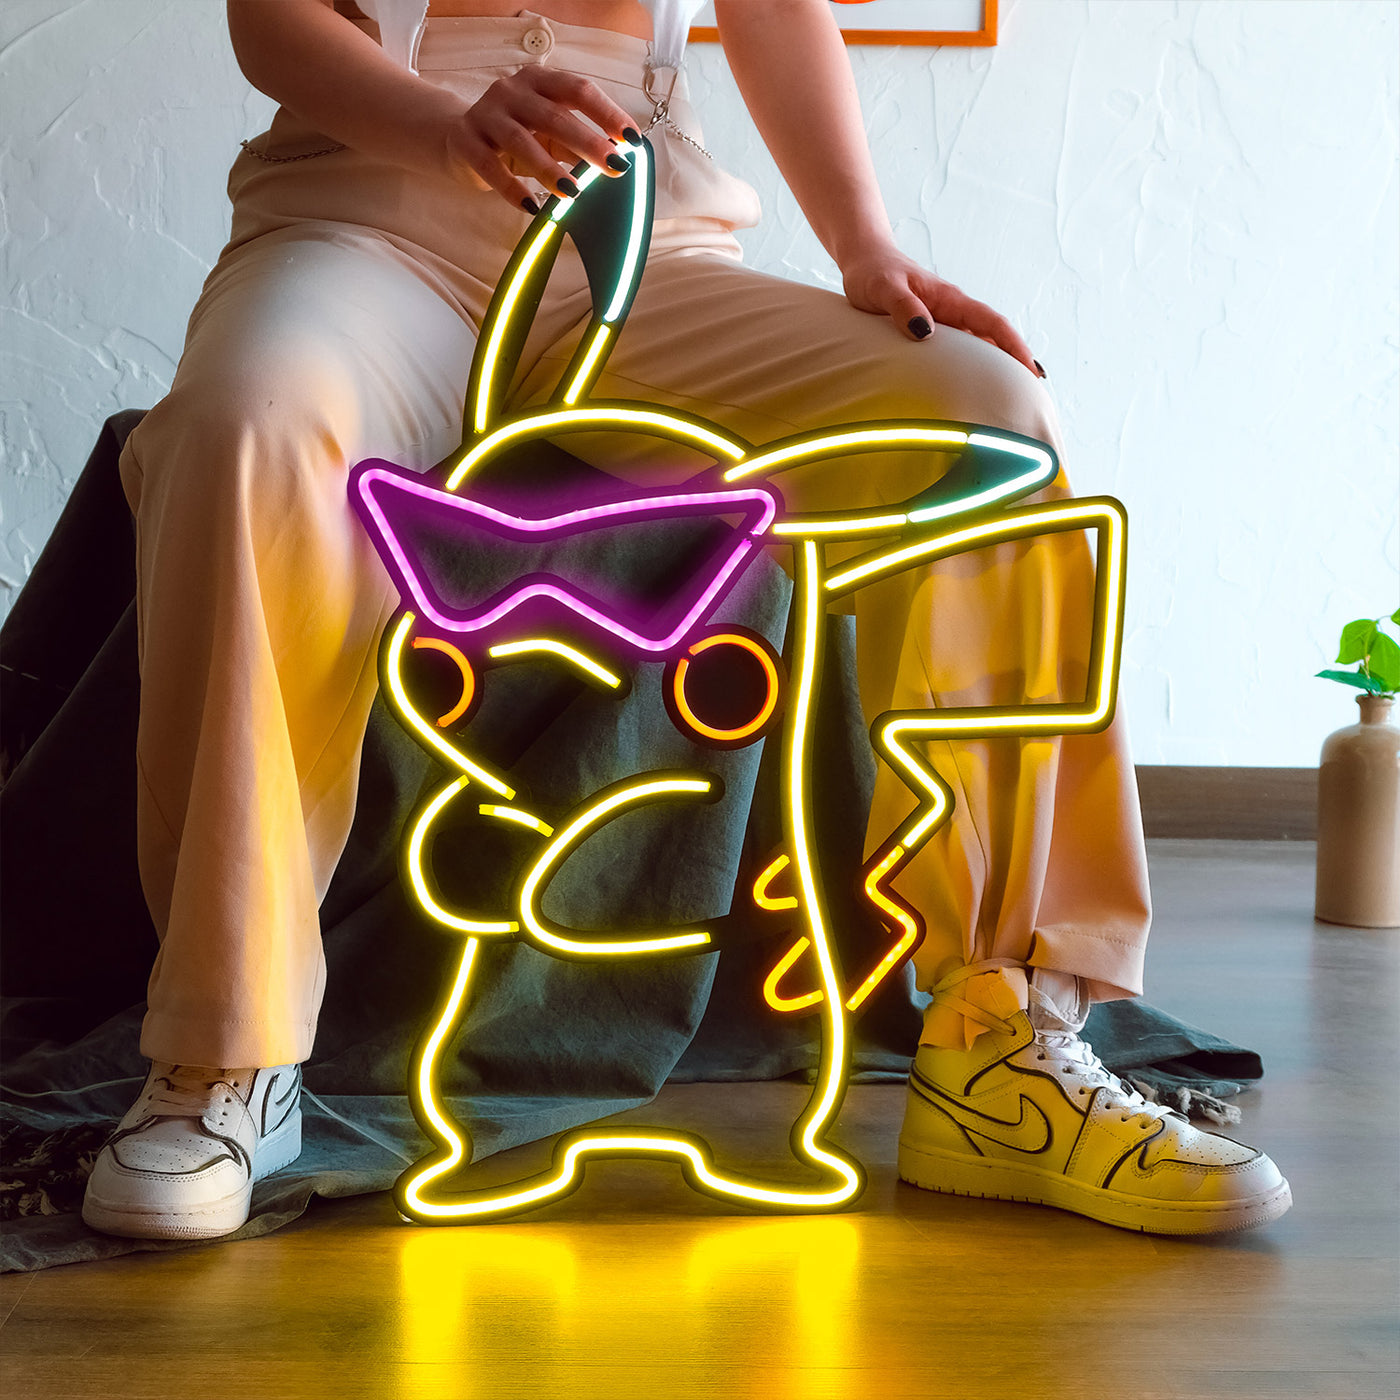 Art mural au néon inspiré de Pikachu 